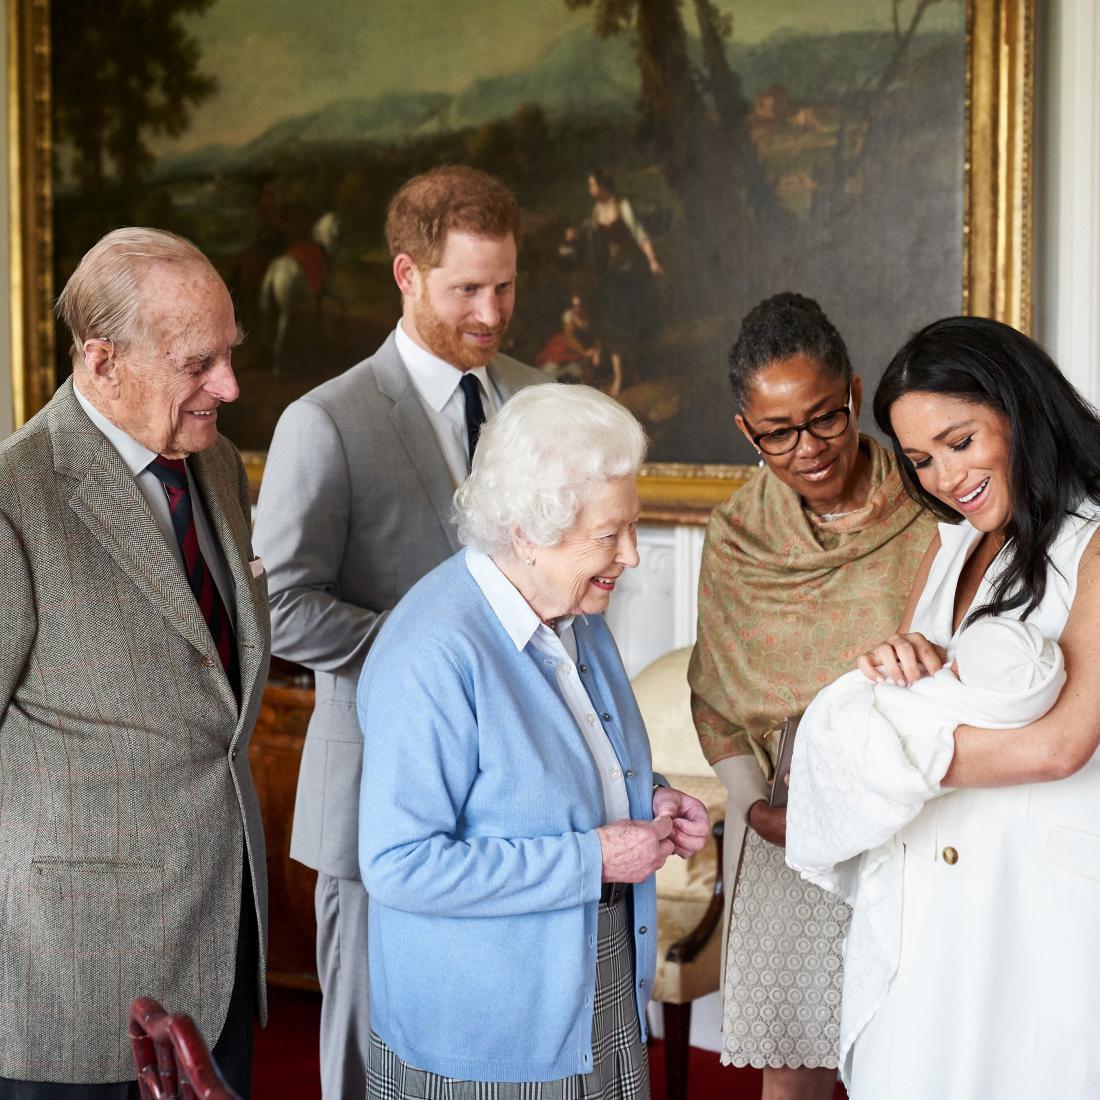 Navdušena prastara starša kraljica in princ Filip ter babica Doria Ragland ob rojstvu prvorojenca princa Harryja in Meghan. Foto: Chris Allerton/Copyright SussexRoyal/Pool via Reuters